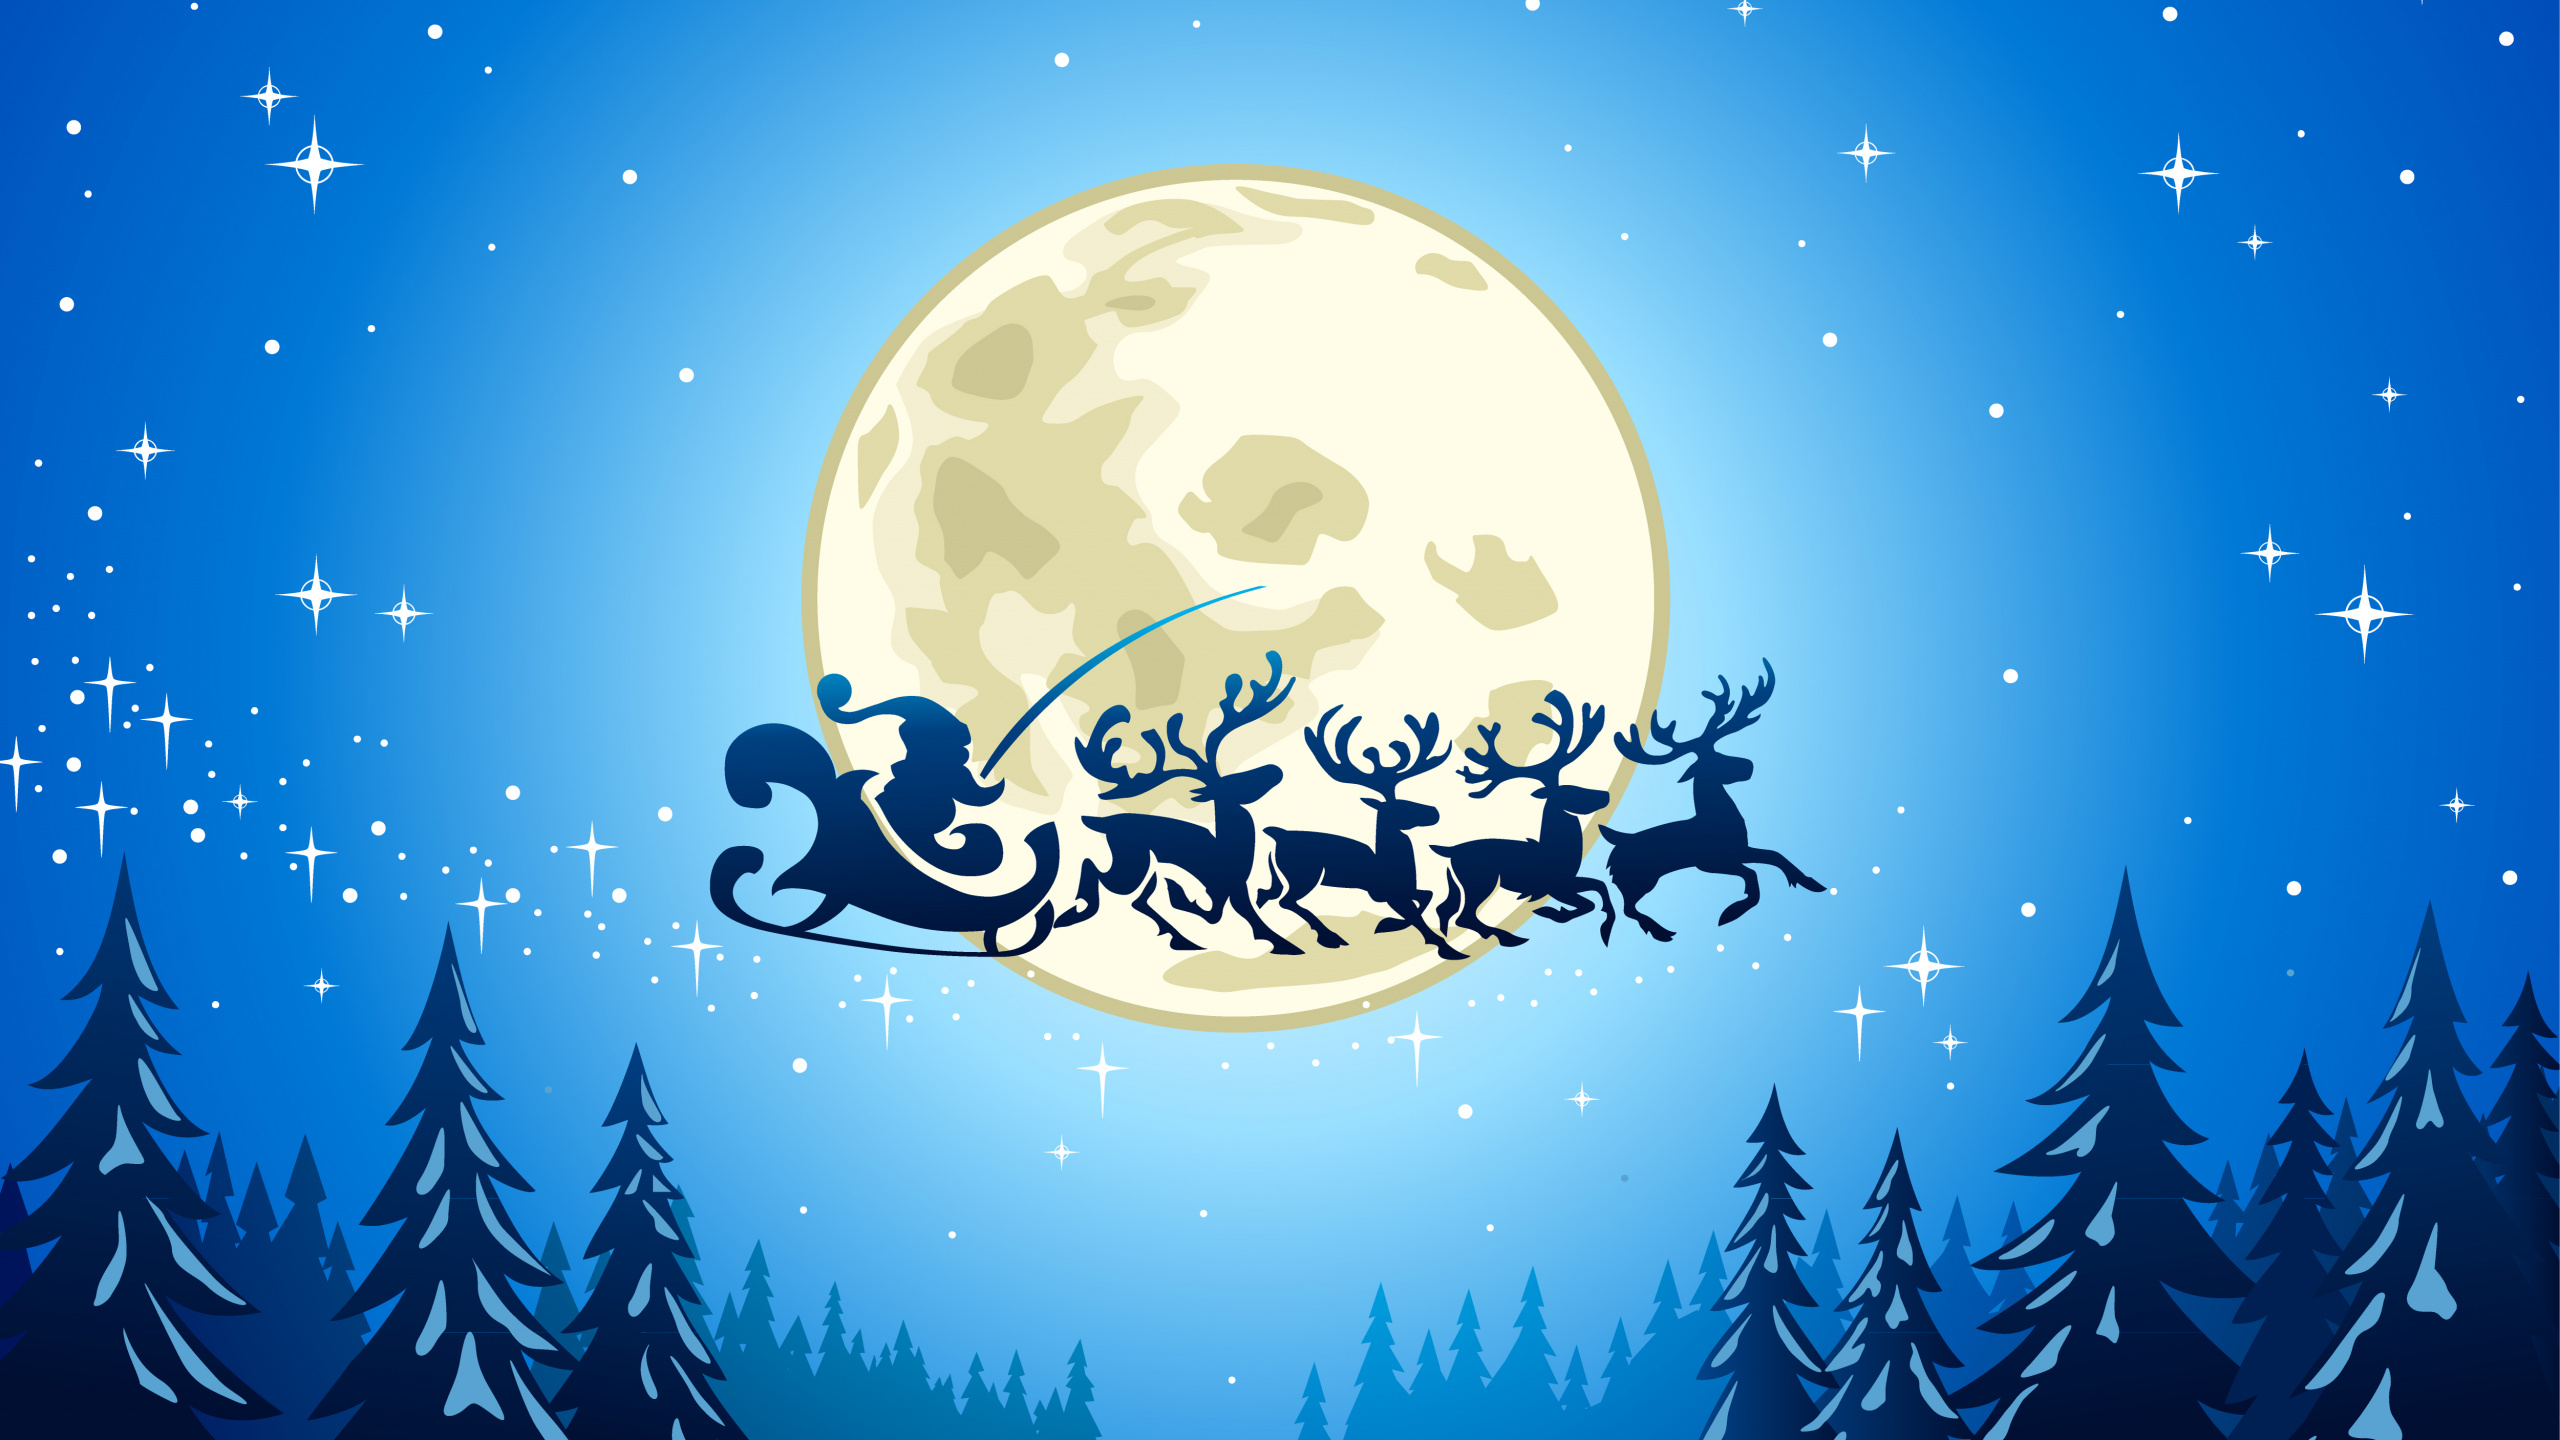 圣诞节那天, 圣诞老人, 圣诞节, 月亮, 副执行主任莫罗兹 壁纸 2560x1440 允许